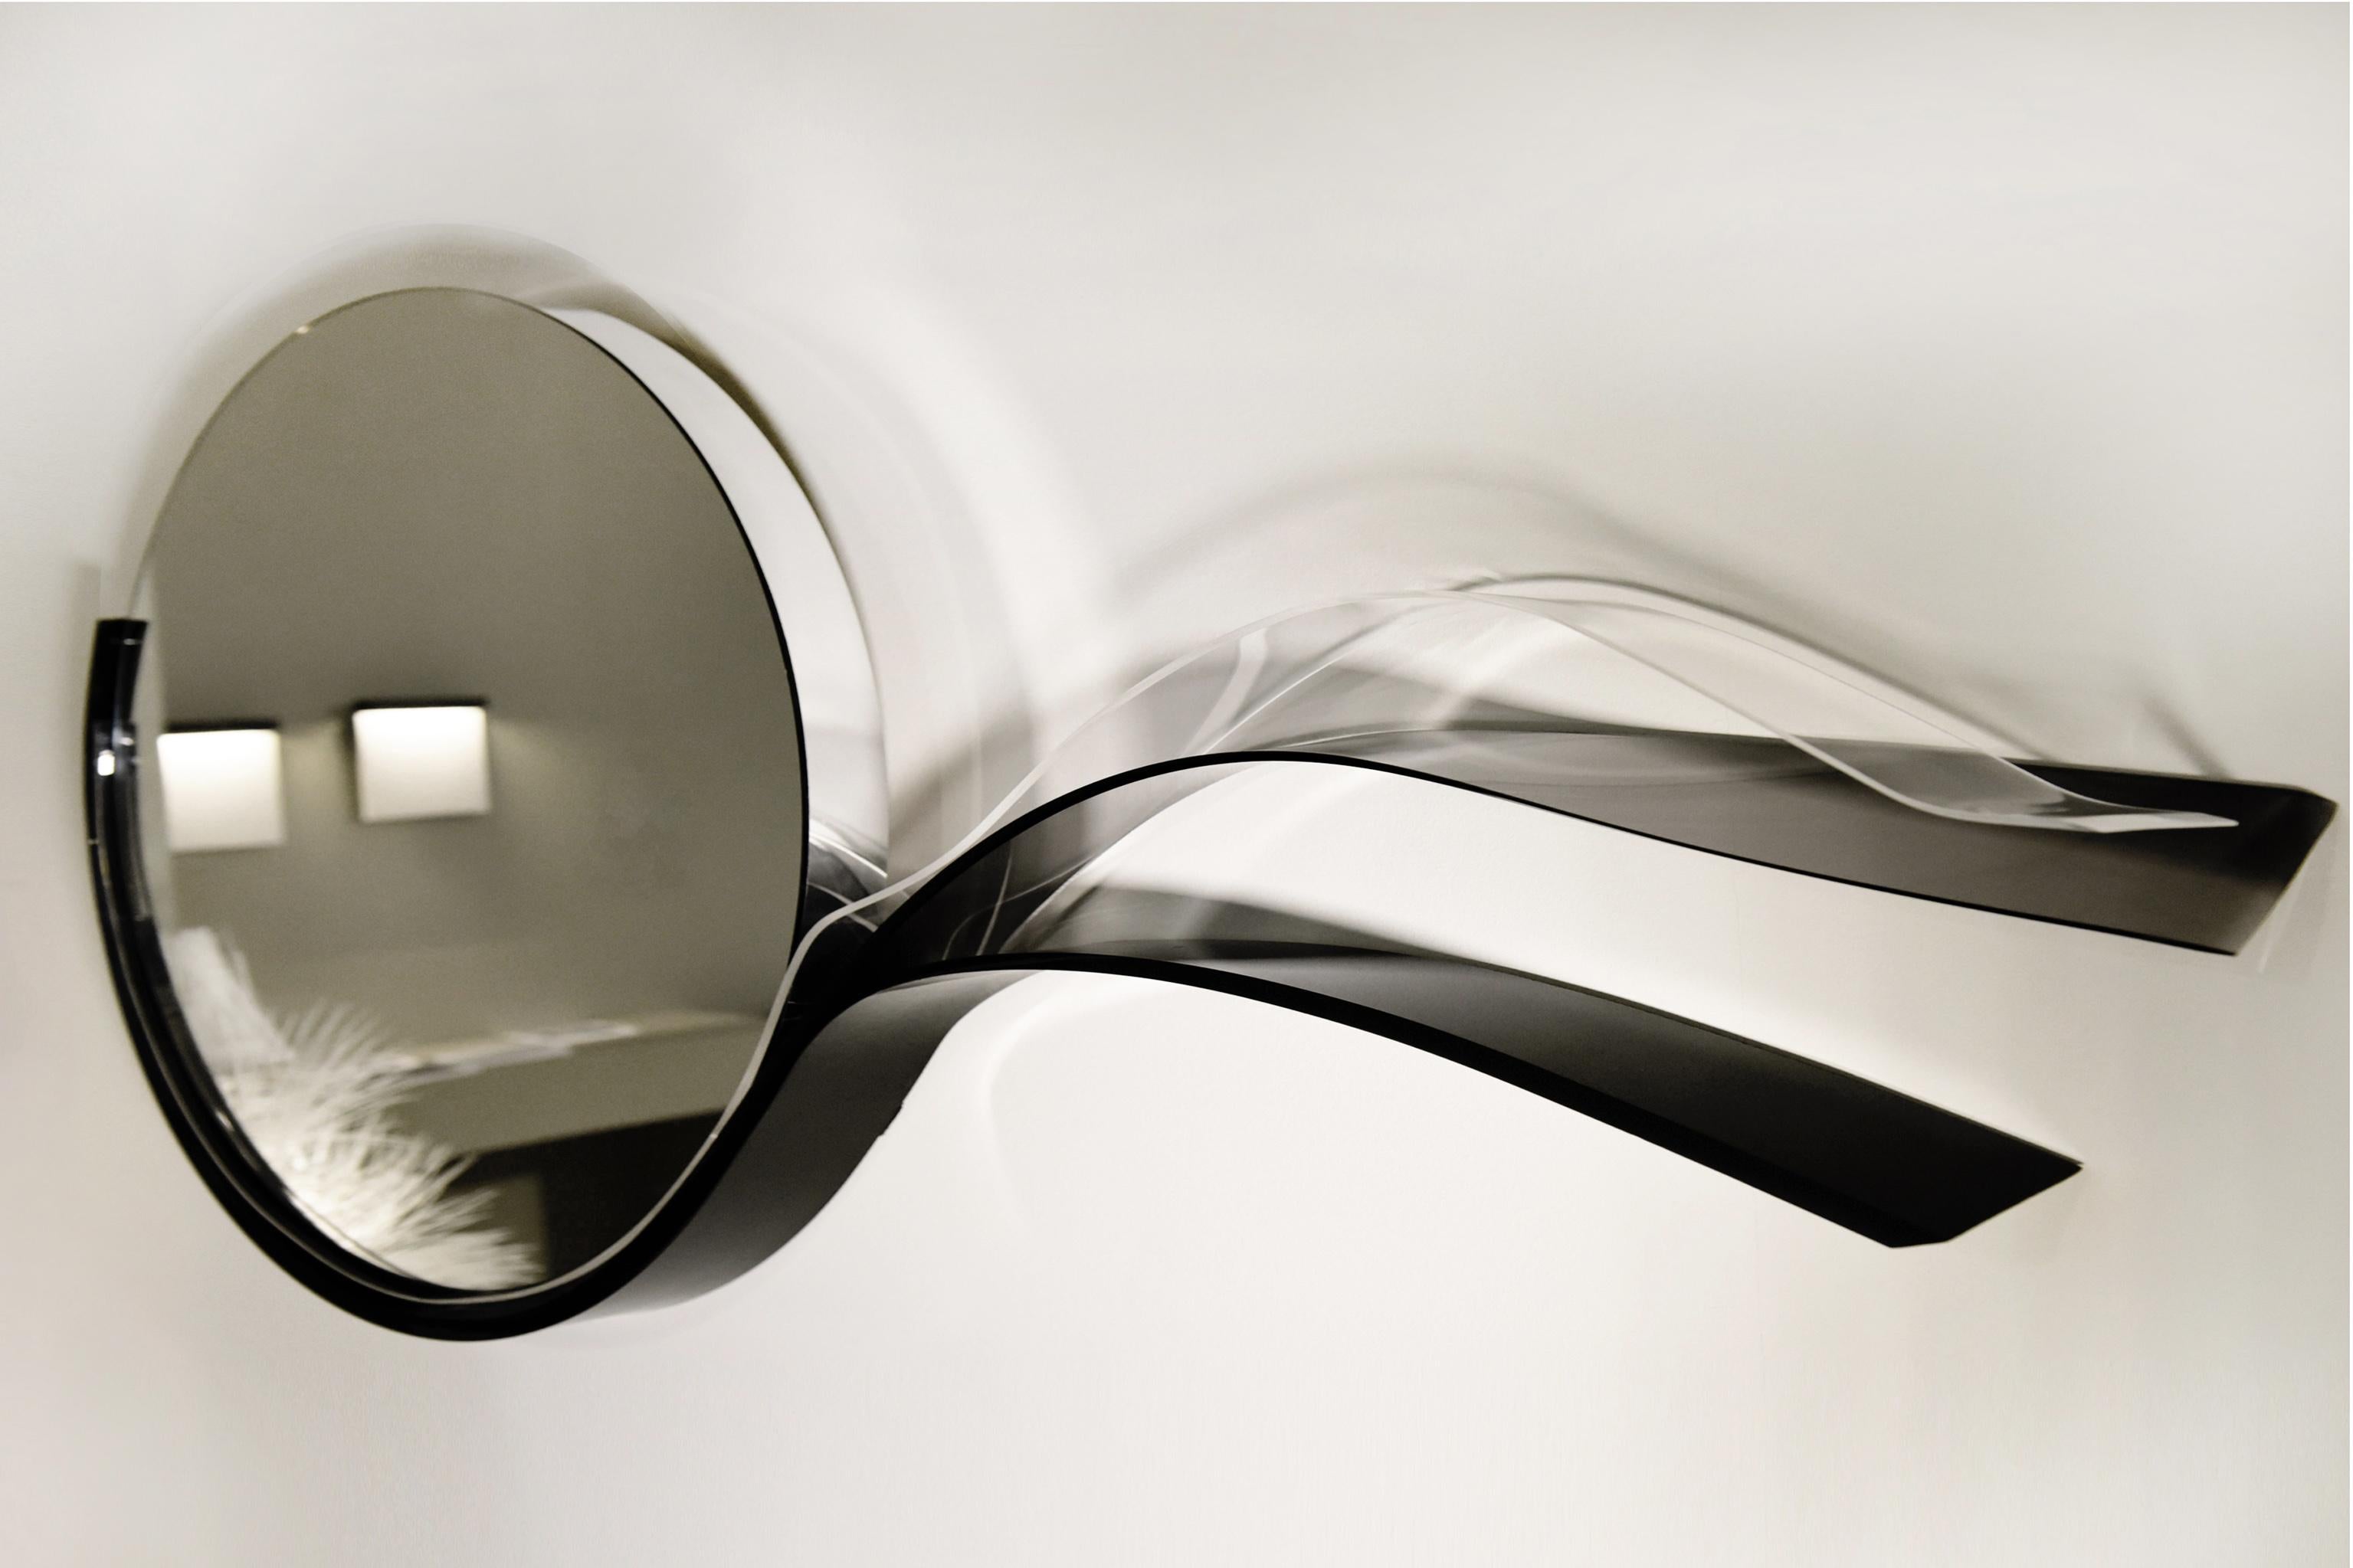 Wave Mirror ist ein Spiegel aus der Black Sea Kollektion des Designers Raoul Gilioli. Der Künstler ließ sich vom nächtlichen Meer mit seinen Spiegelungen und seiner Magie inspirieren (ein sehr beliebtes Thema in allen Werken Giliolis).
Die Wellen